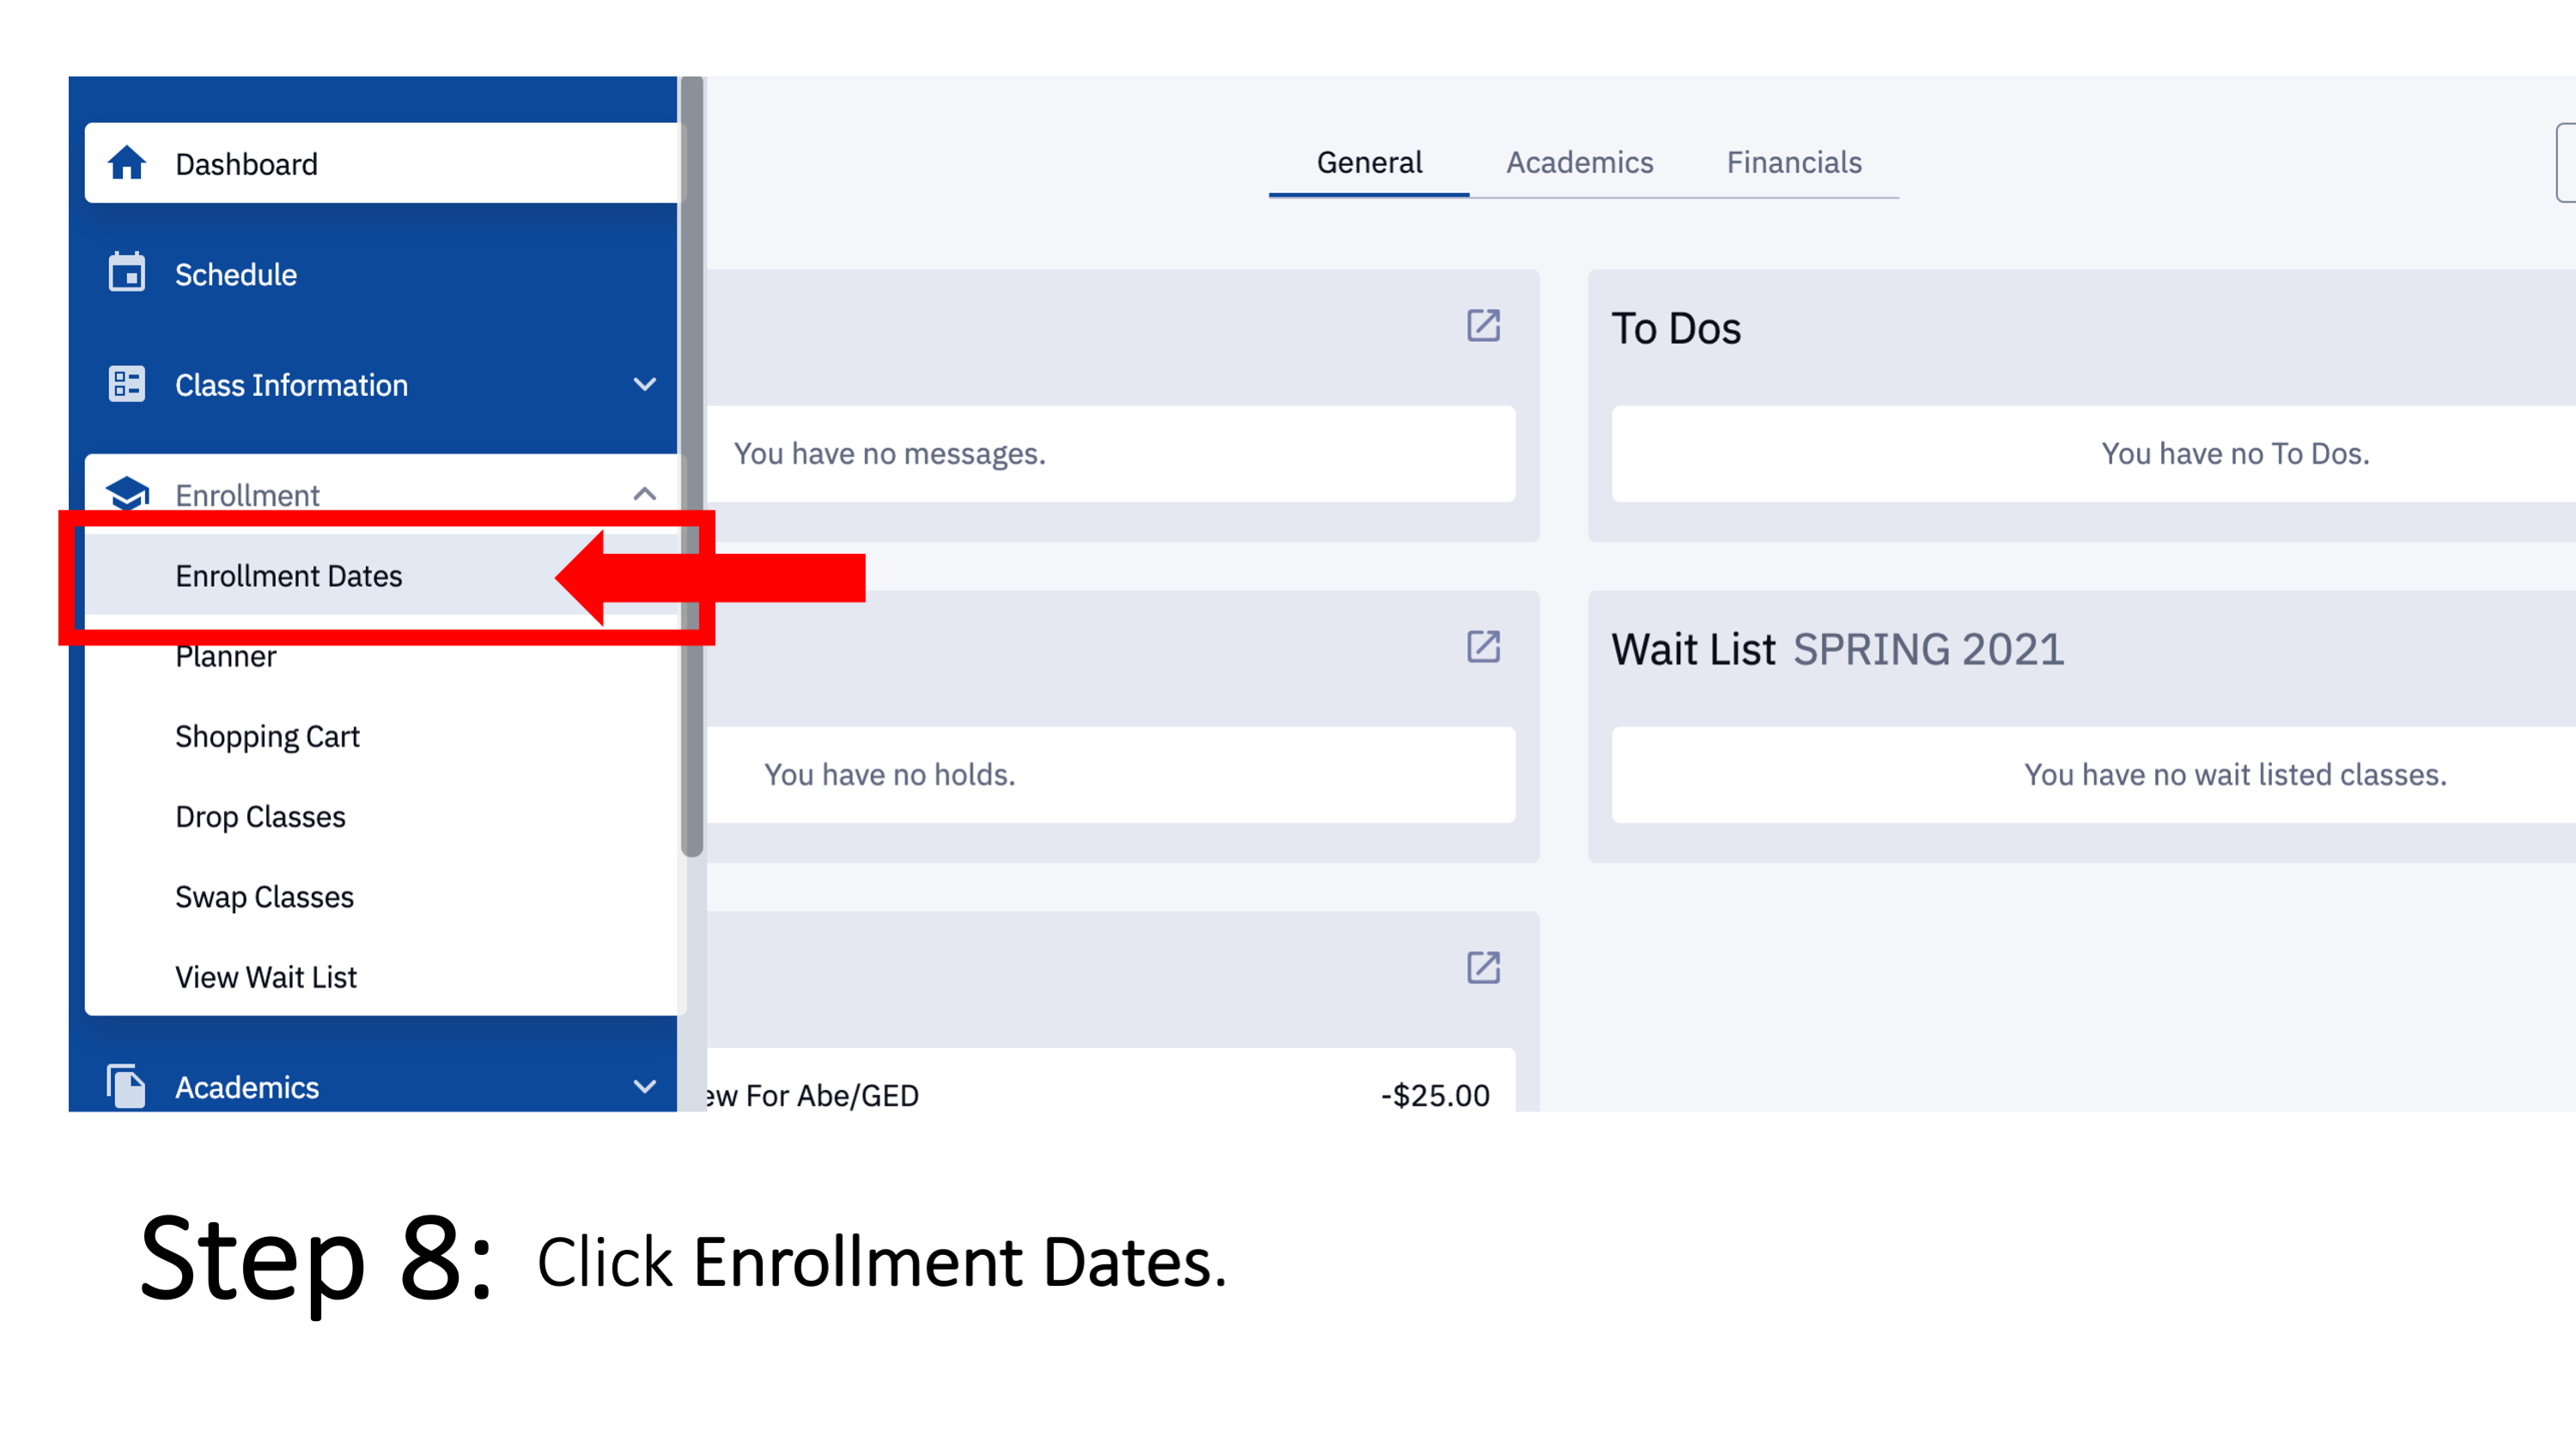 Step 8: Click Enrollment Dates.